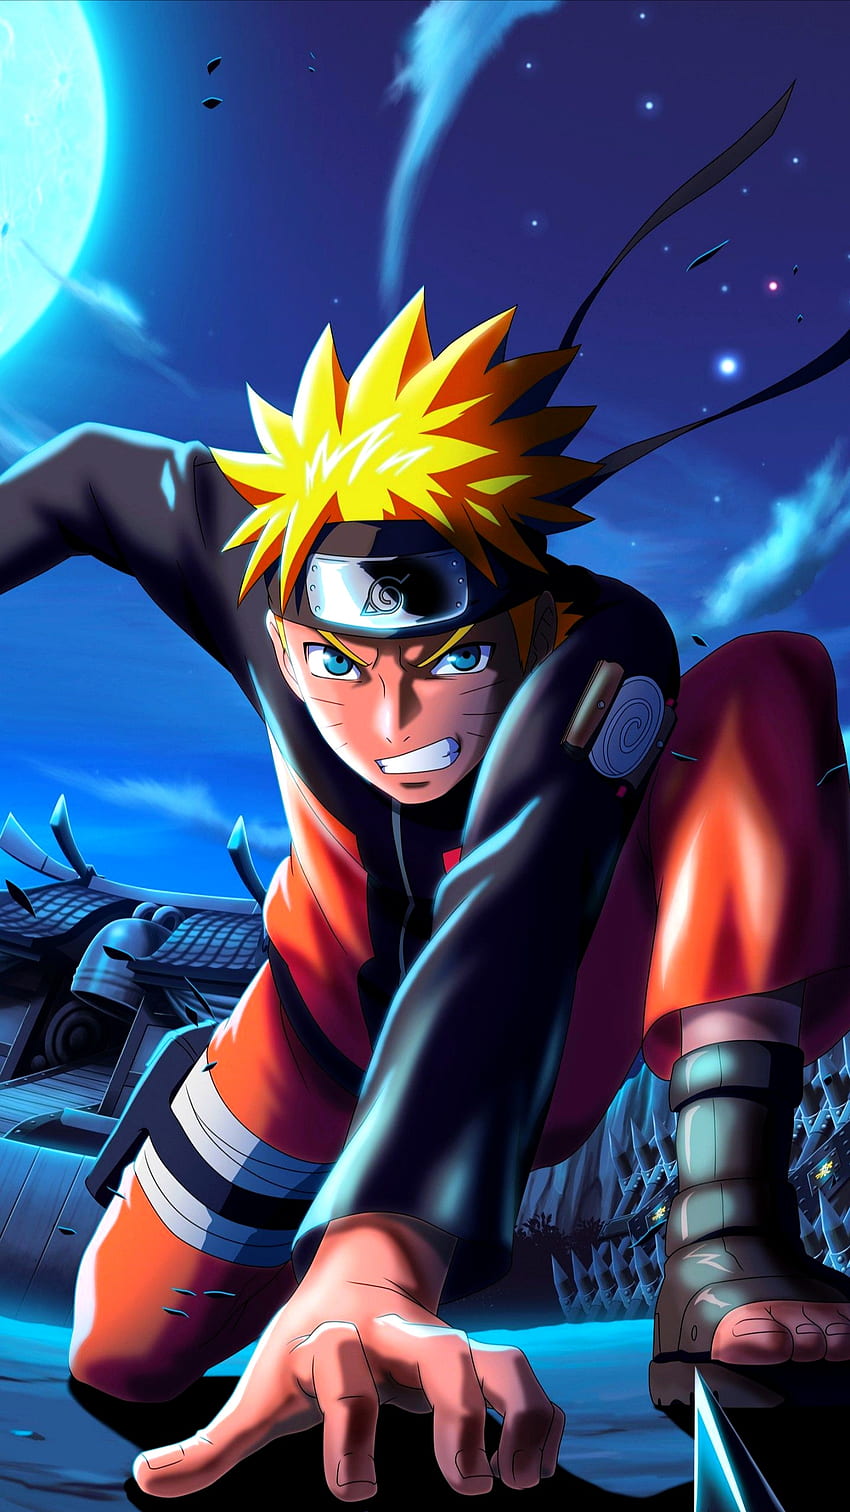 Uzumaki Naruto: Naruto - Người hùng của thế hệ Ninja. Khám phá hành trình trưởng thành của Naruto, từ một cậu bé trẻ trở thành một chiến binh vĩ đại. Với sức mạnh và bản lĩnh của mình, Naruto đã đứng lên chống lại bất cứ thách thức nào đối với làng ninja của mình. Dù bạn là một fan hâm mộ hay không, cũng không thể phủ nhận sức hút của nhân vật này.